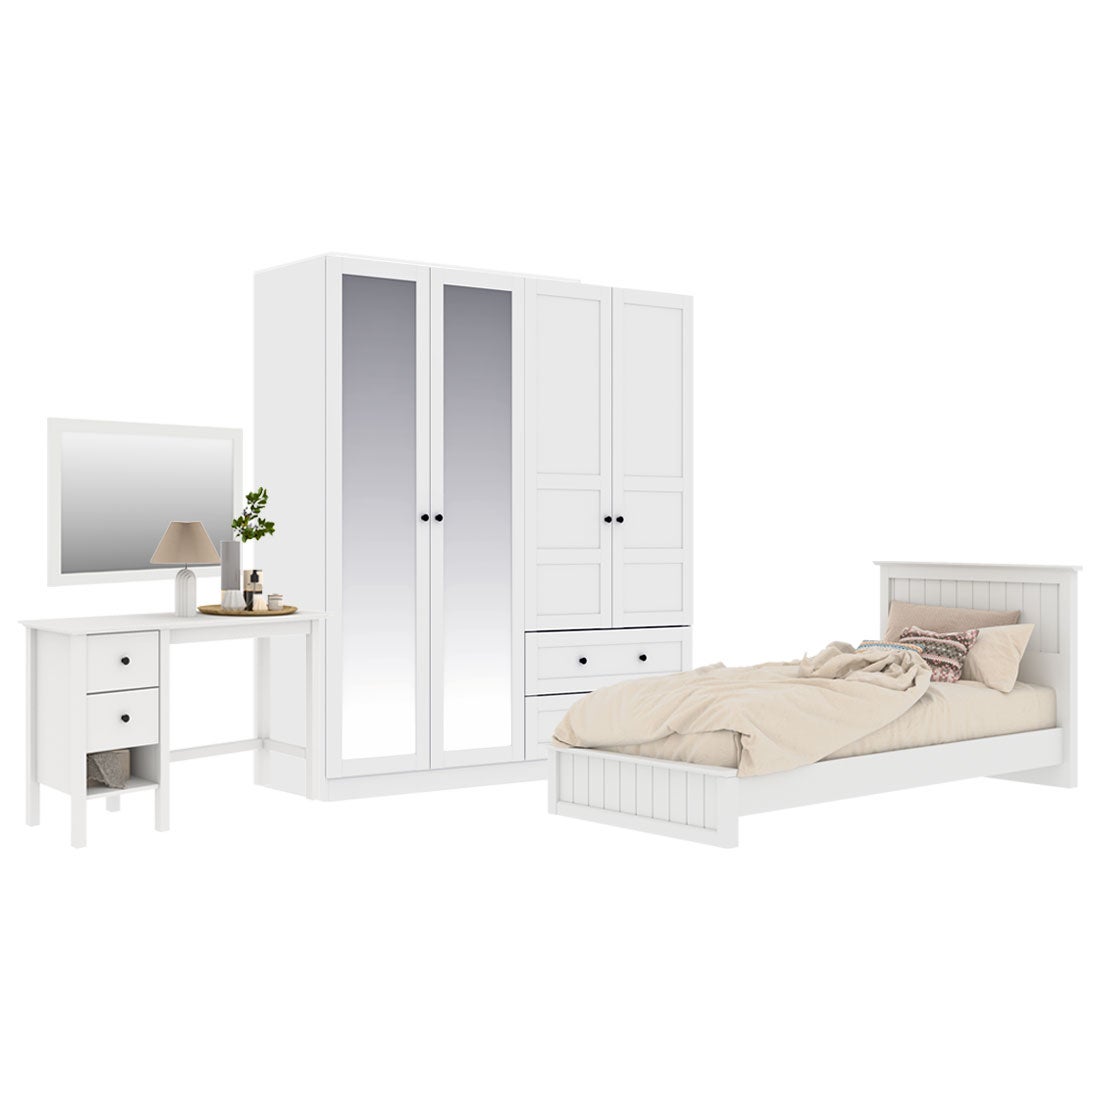 ชุดห้องนอน ขนาด 3.5 ฟุต รุ่น Moneta & ตู้บานเปิด 180 ซม. สีขาว01